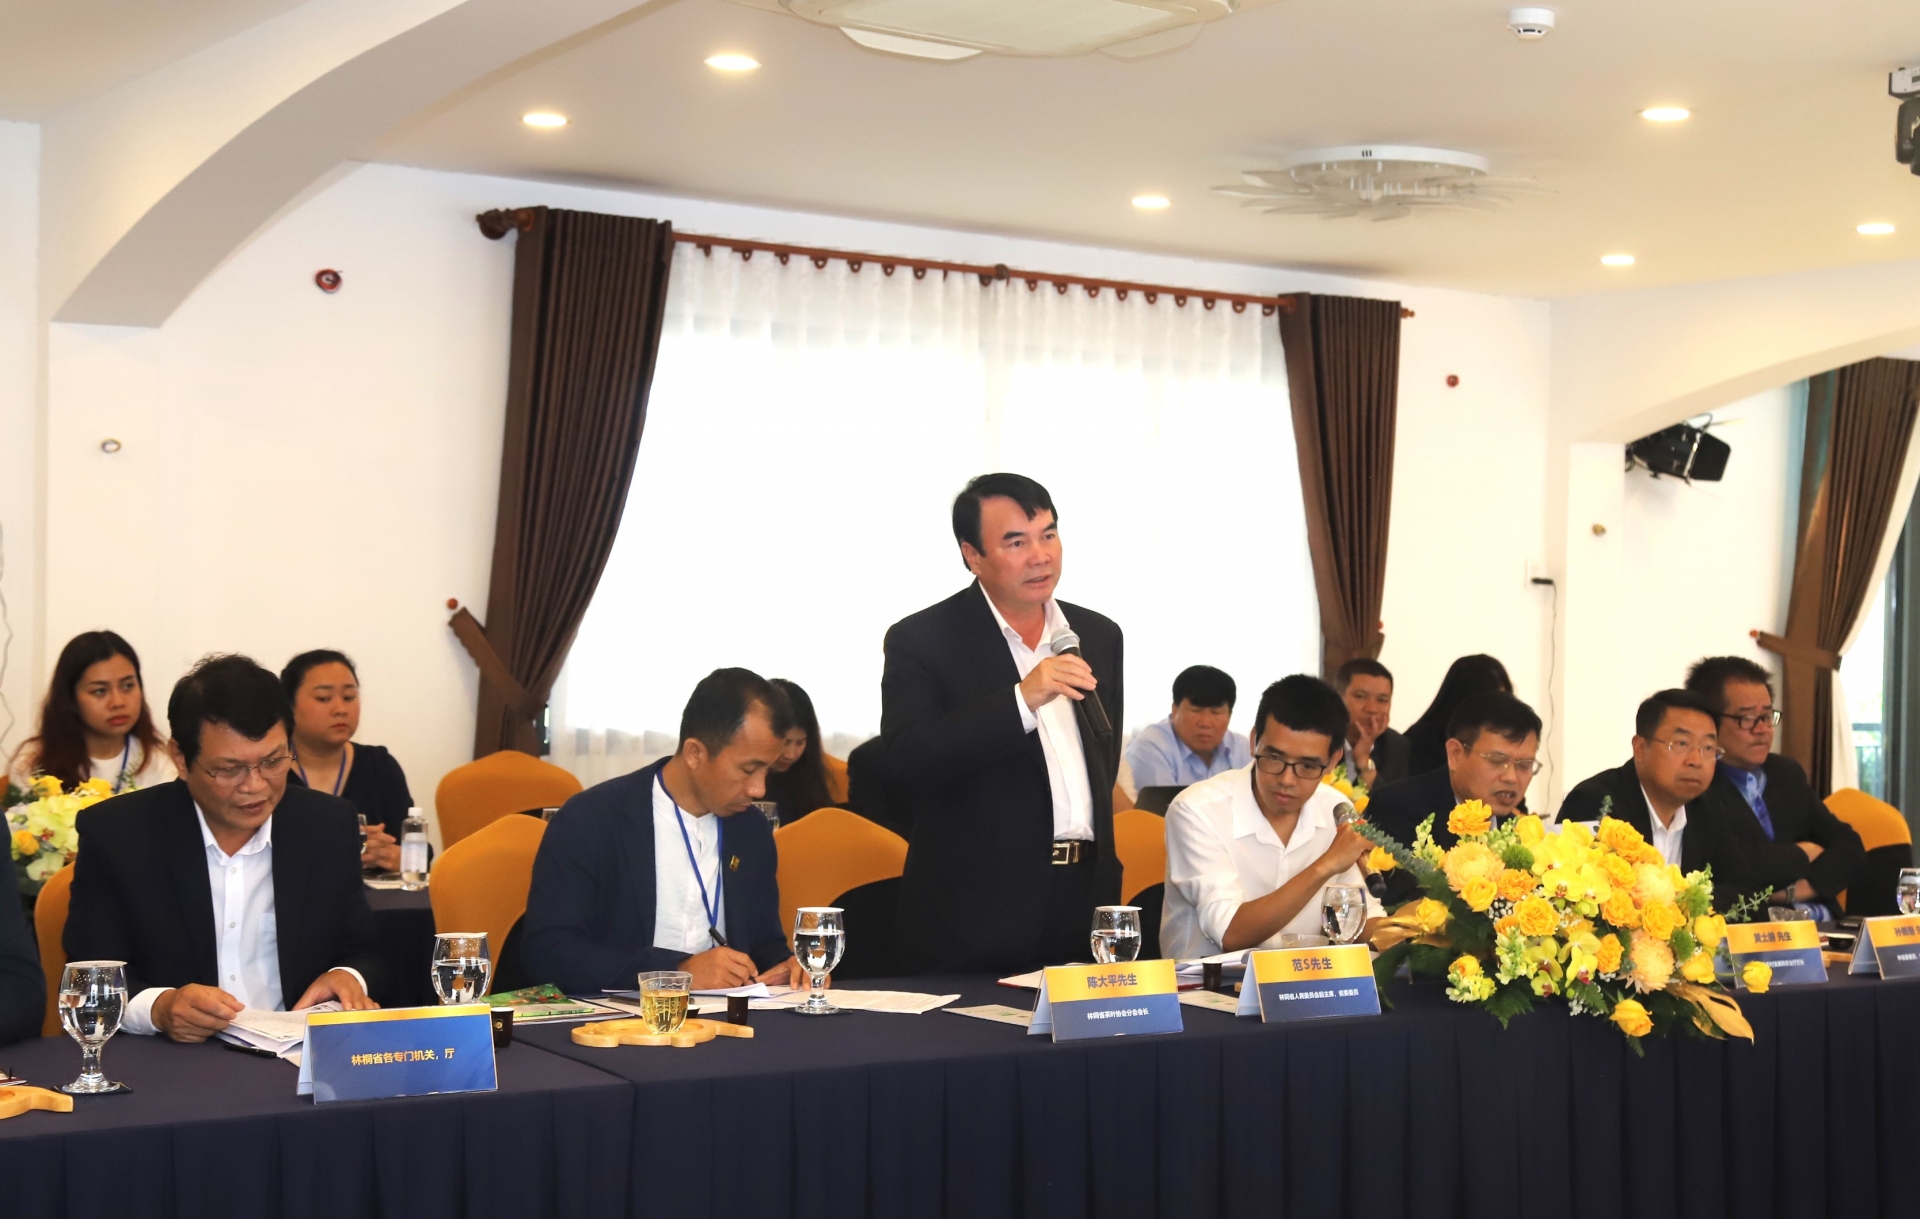 Đồng chí Phạm S – Phó Chủ tịch UBND tỉnh Lâm Đồng khái quát về quá trình phát triển của ngành chè Lâm Đồng